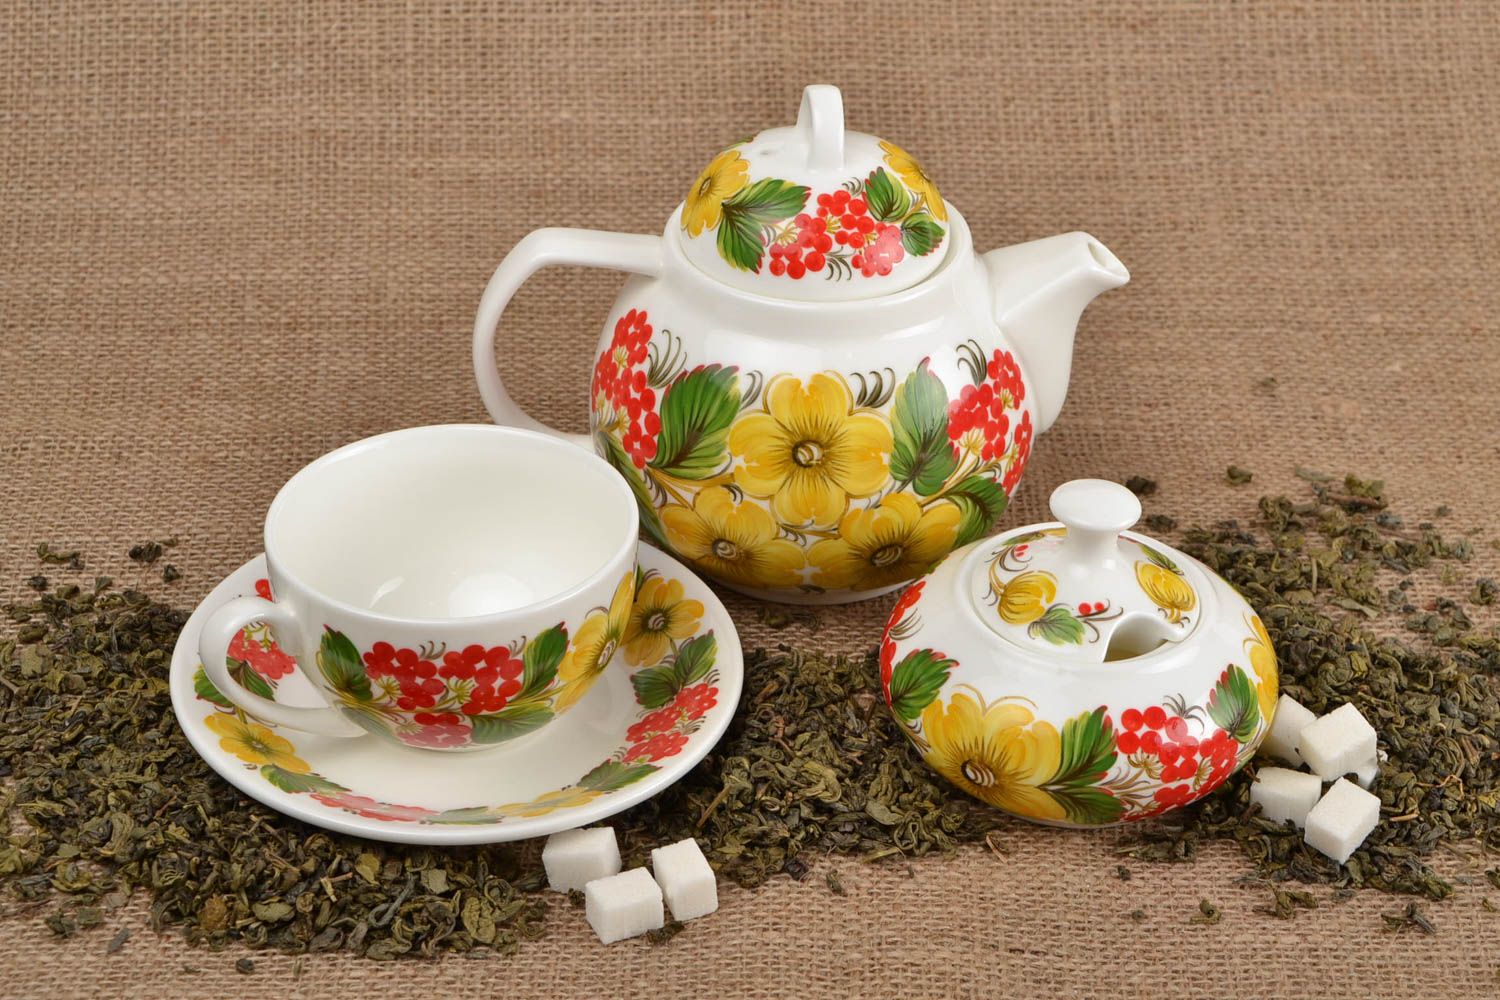 Фарфоровый набор посуды с Петриковской росписью чайник чашка с блюдцем сахарница фото 1